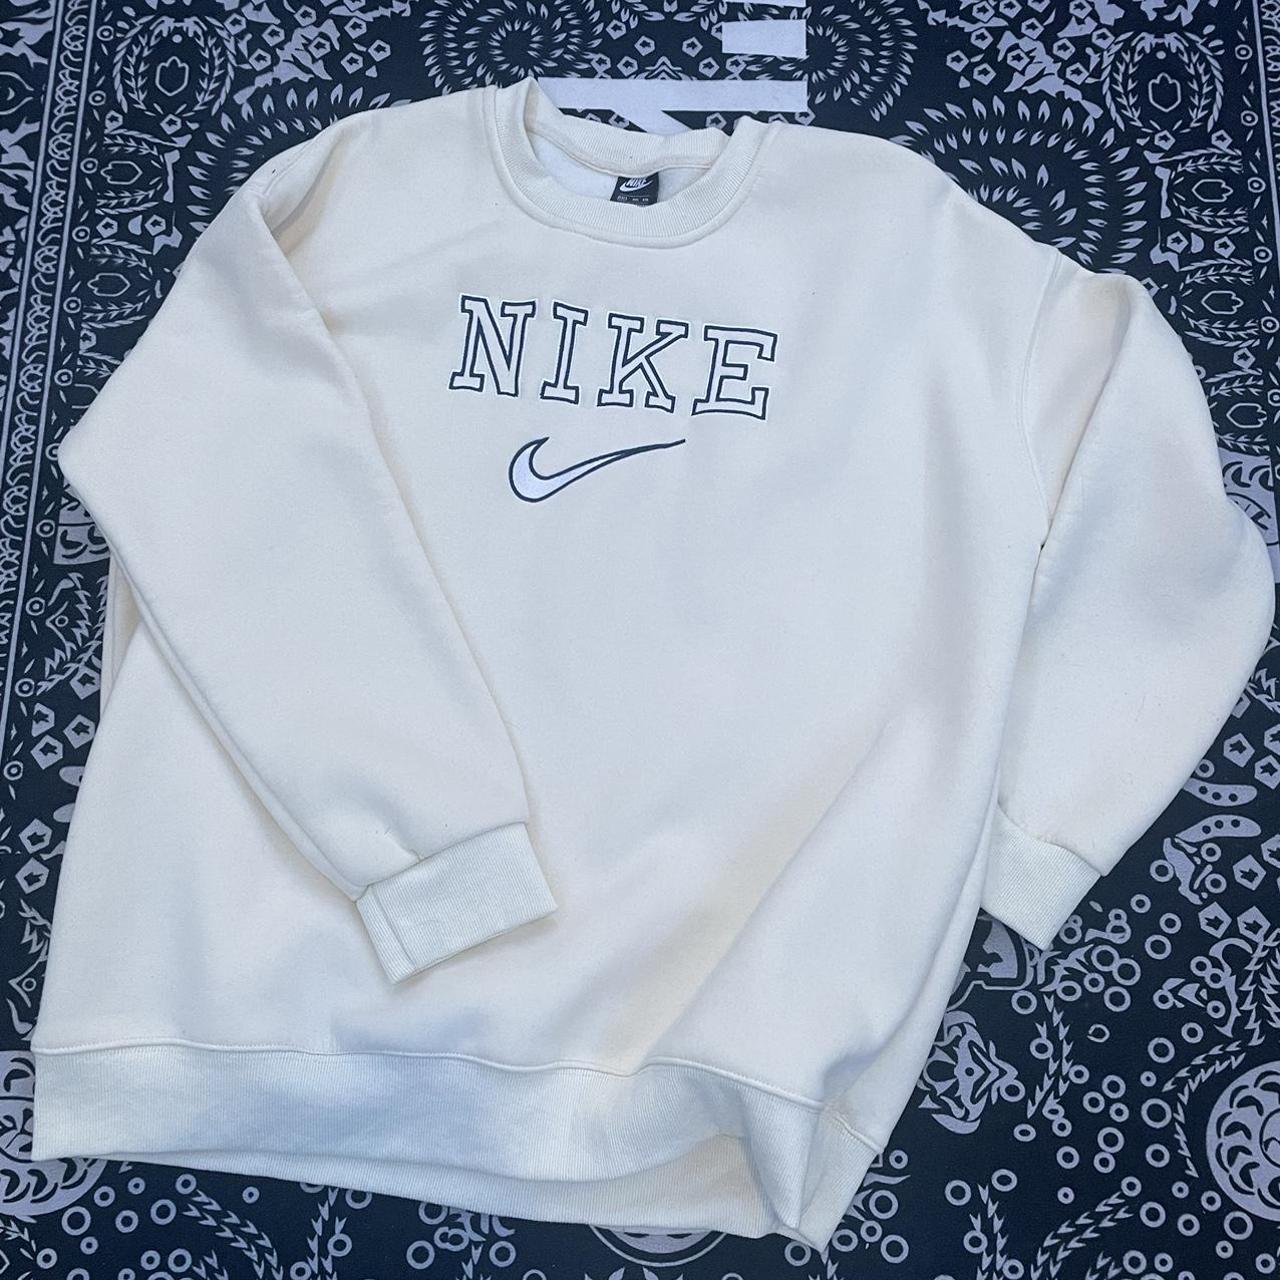 Vintage Nike Sweater It’s an xxl but it fits like... - Depop